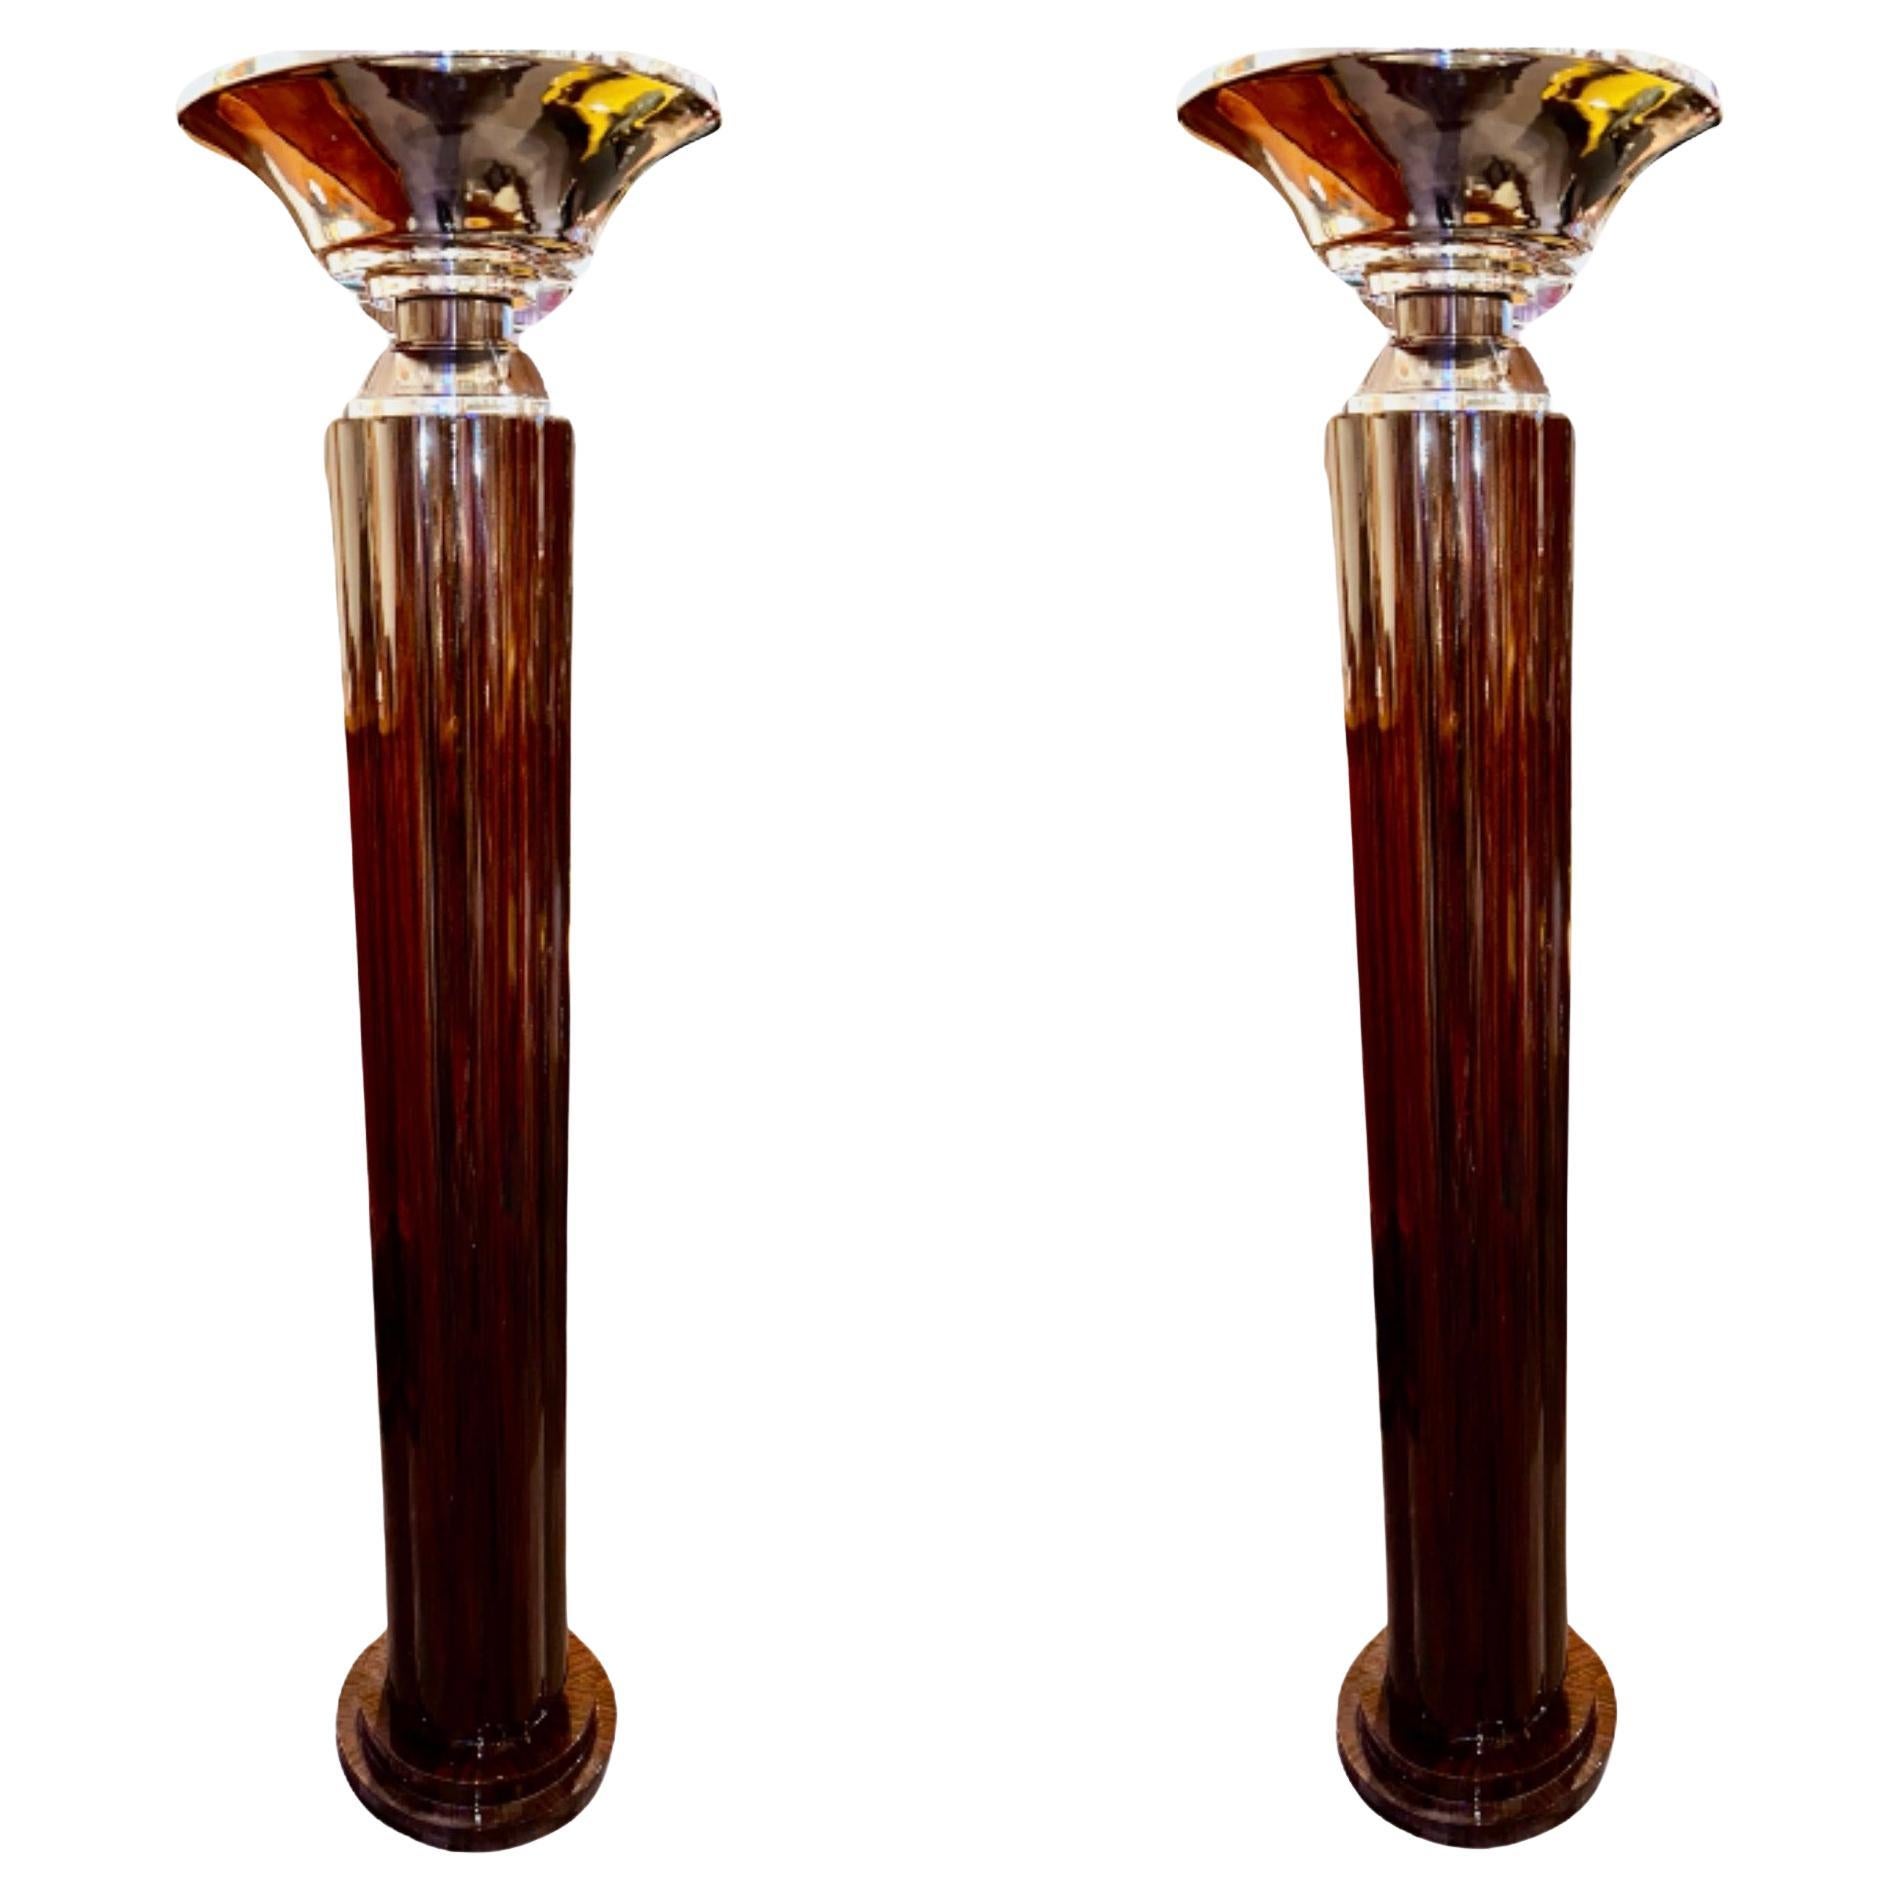 Art Deco Floor Lamps Ruhlmann Style Chrome Tops Custom Made For Sale